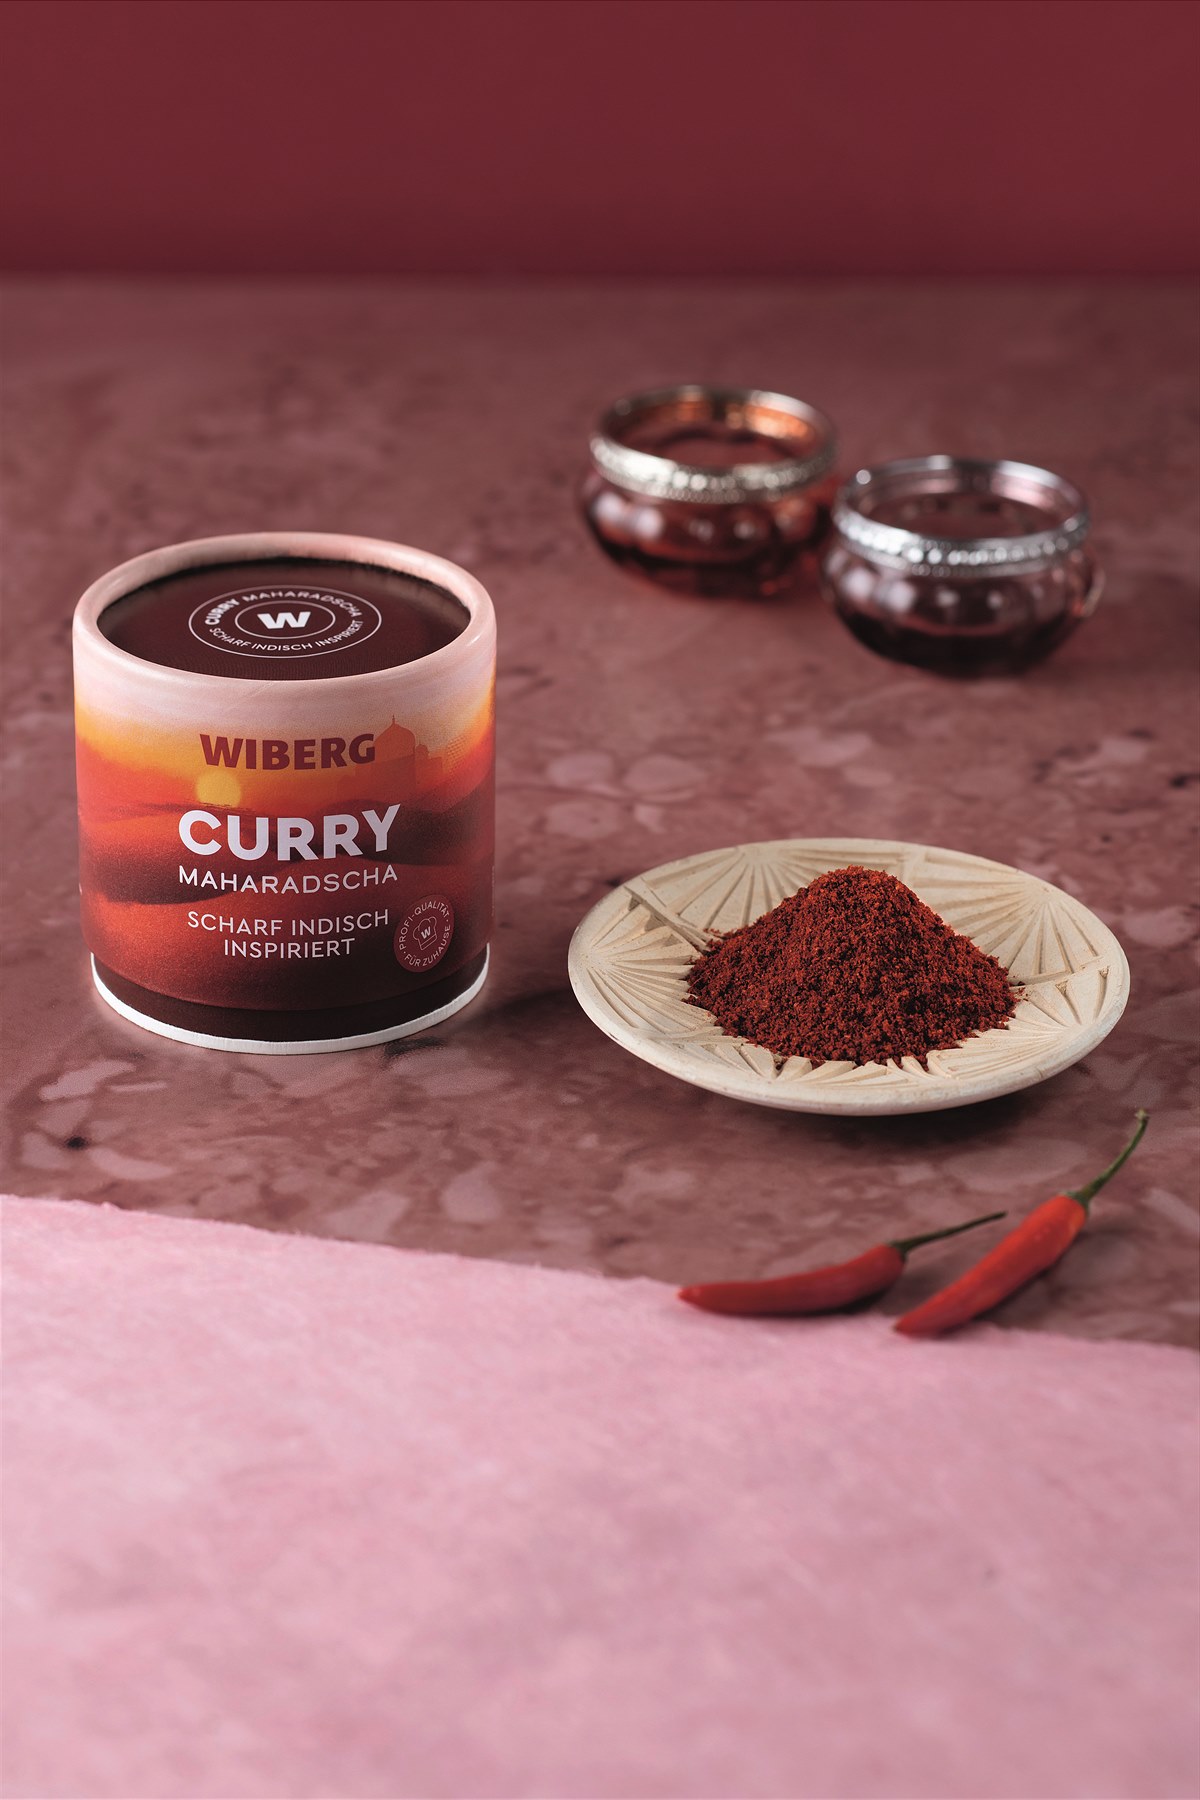 WOW Curry Maharadscha - scharf indisch inspiriert